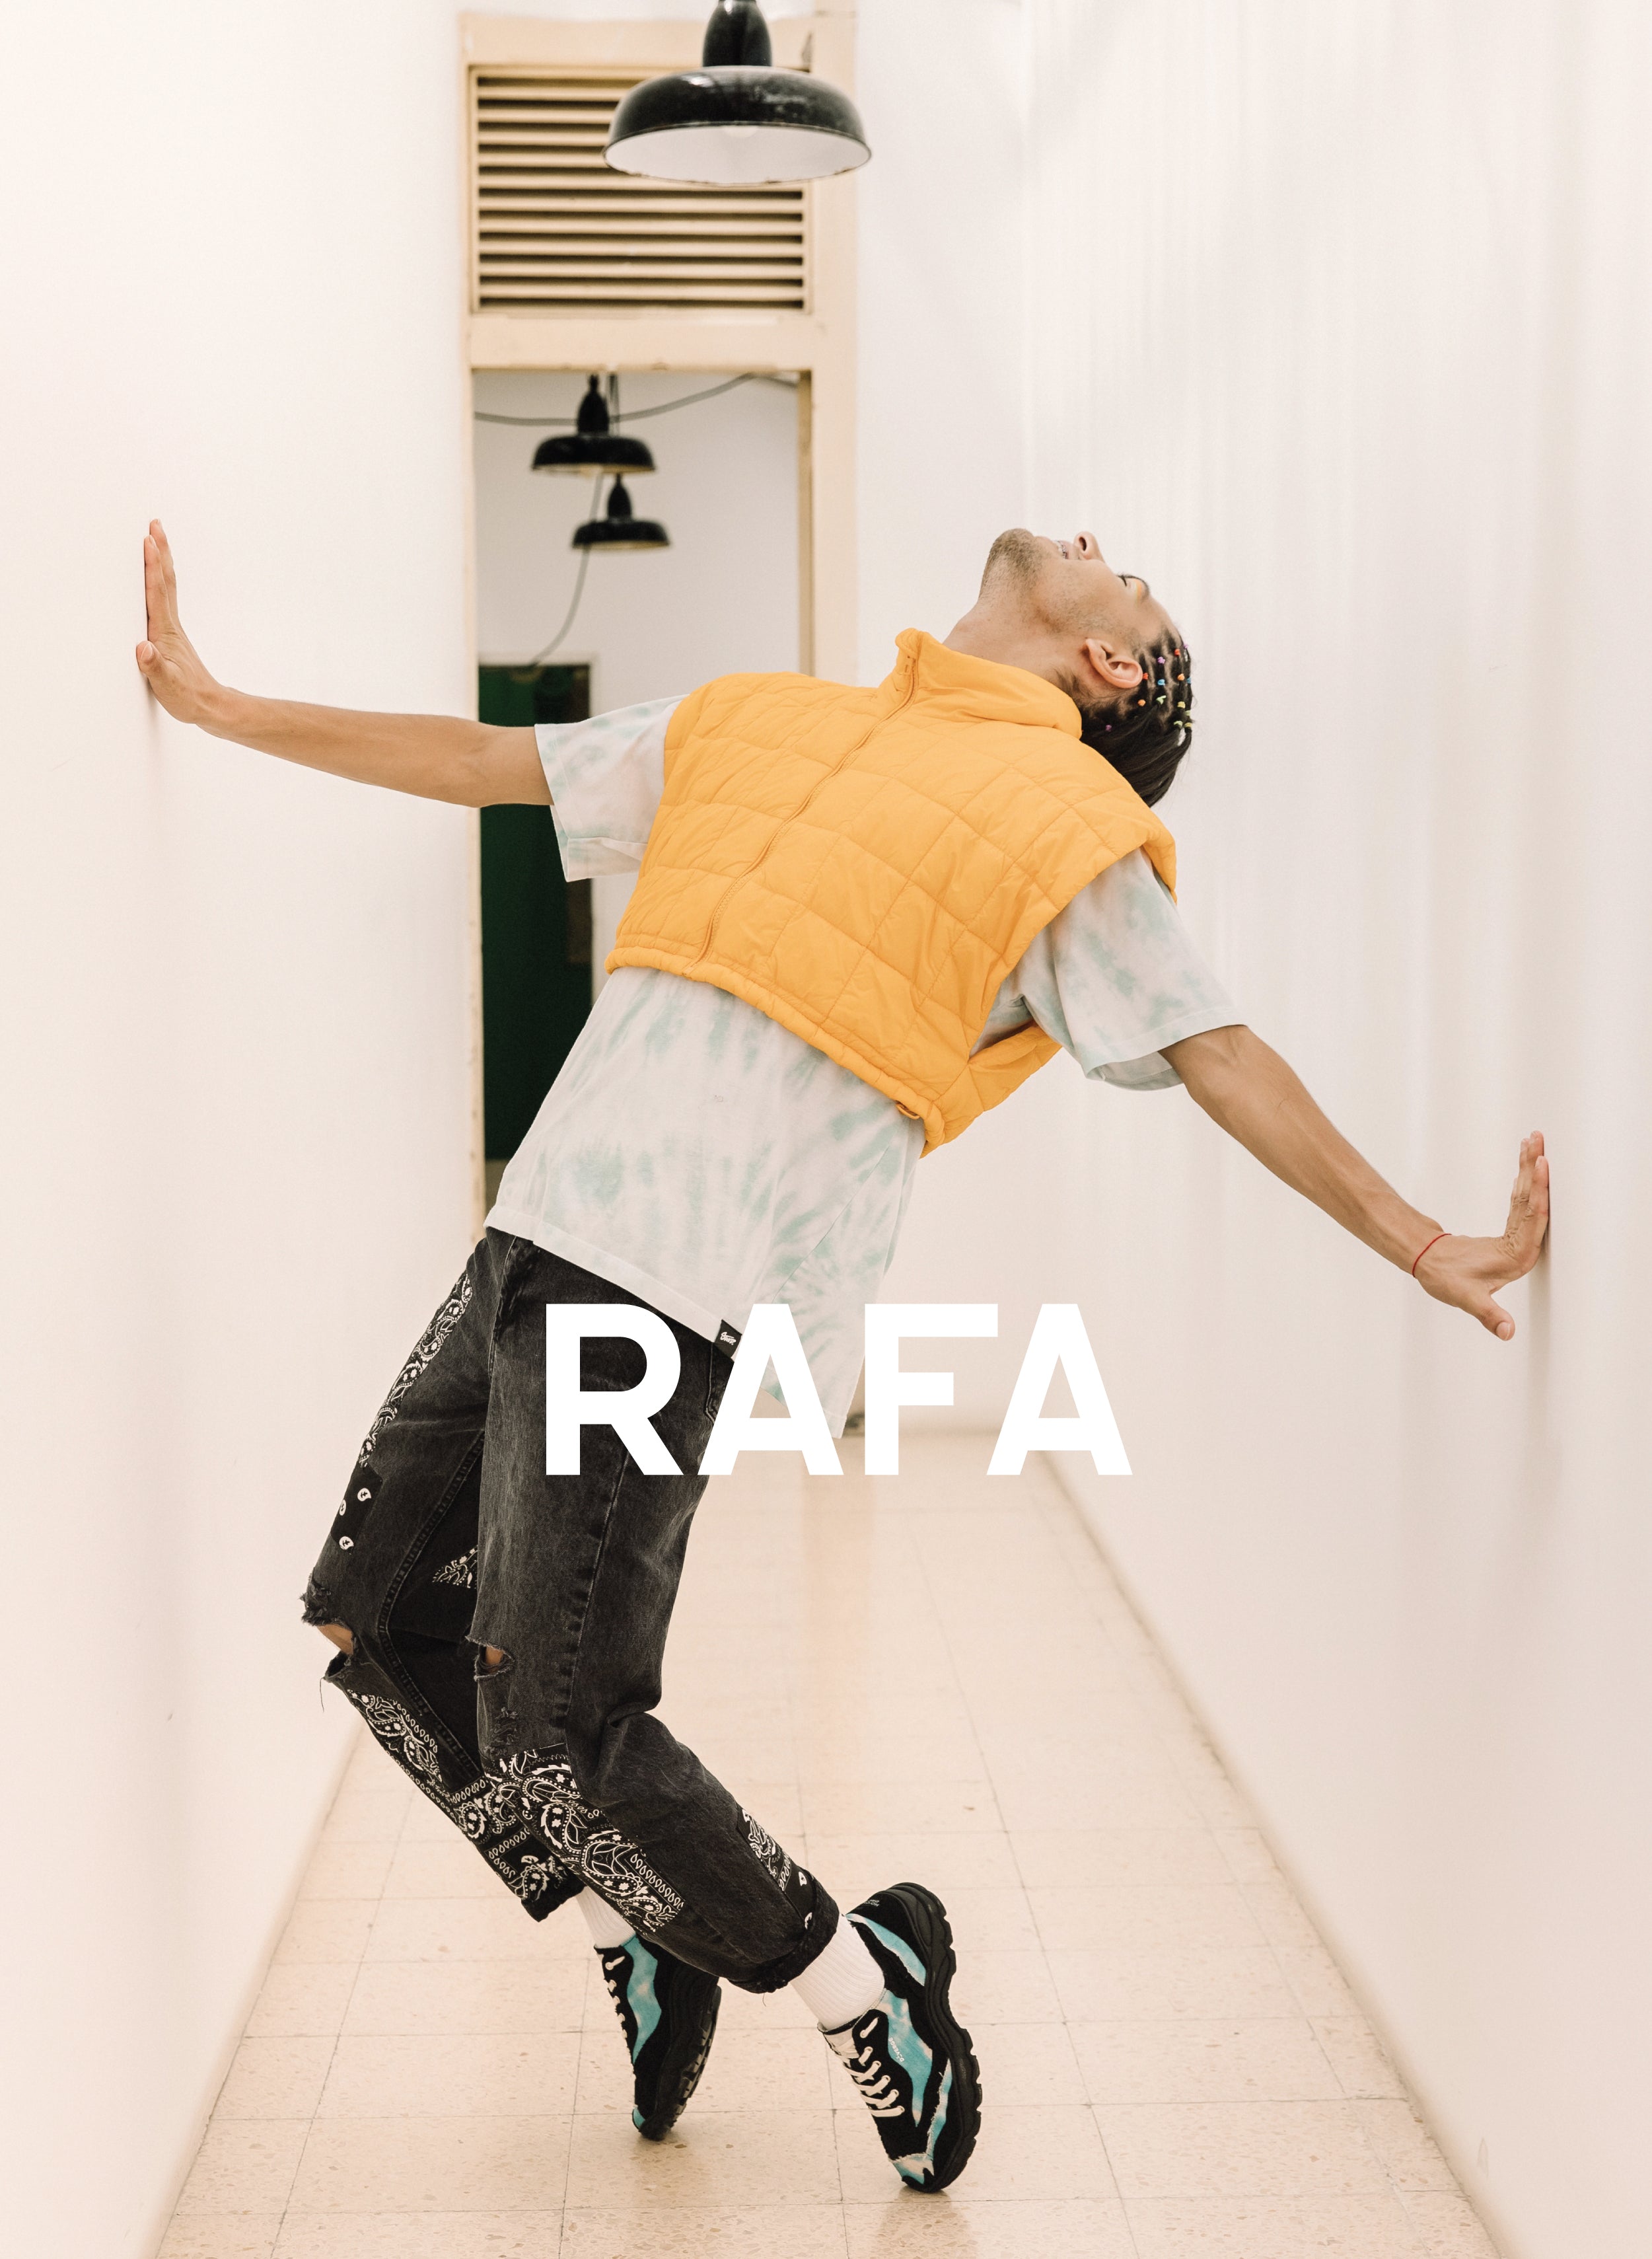 Rafa suspendu au-dessus de ses pieds, portant Diverge sneakers, promouvant l’impact social et les chaussures personnalisées à travers le projet Imagine.